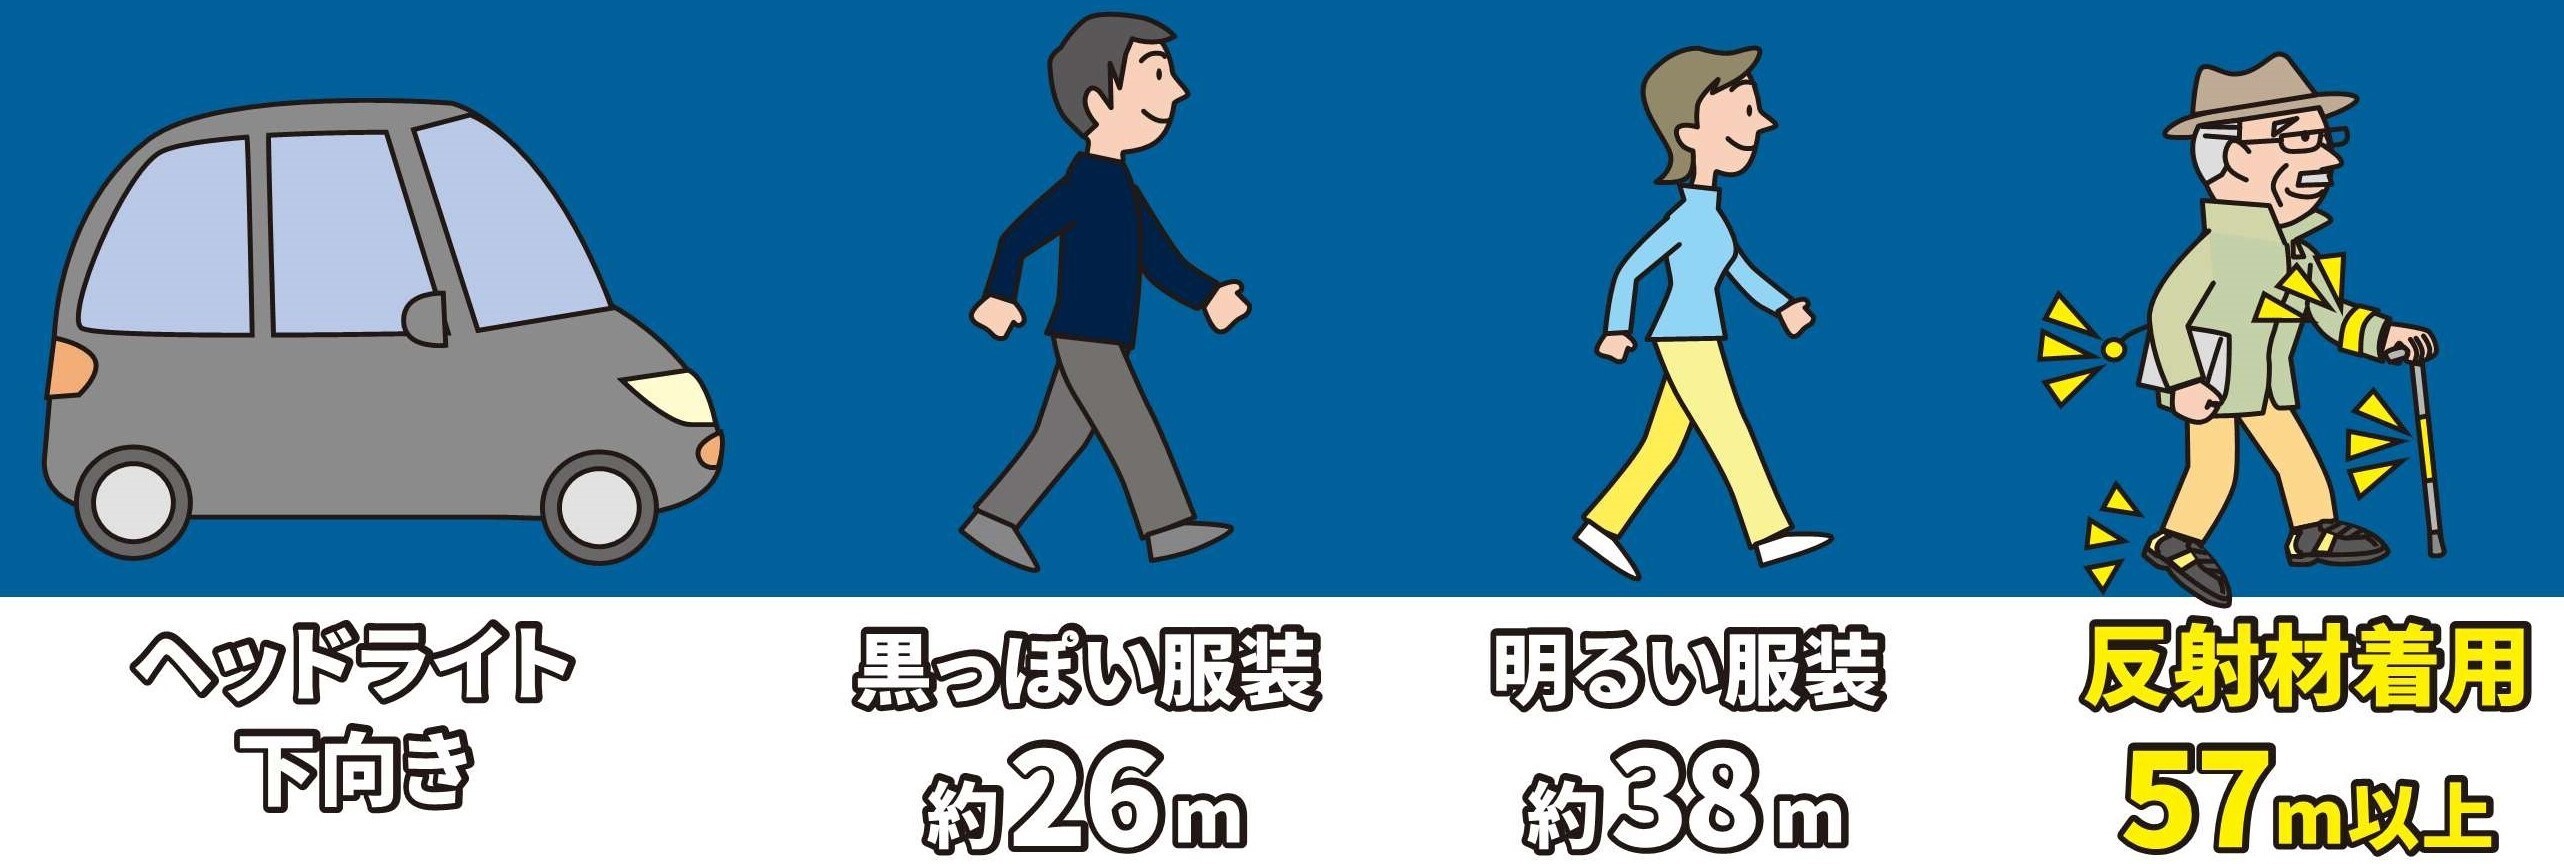 ピカチュウ反射リストバンド を作成 高齢歩行者を夕暮れ 夜間の交通事故から守る 一般社団法人 日本損害保険協会のプレスリリース